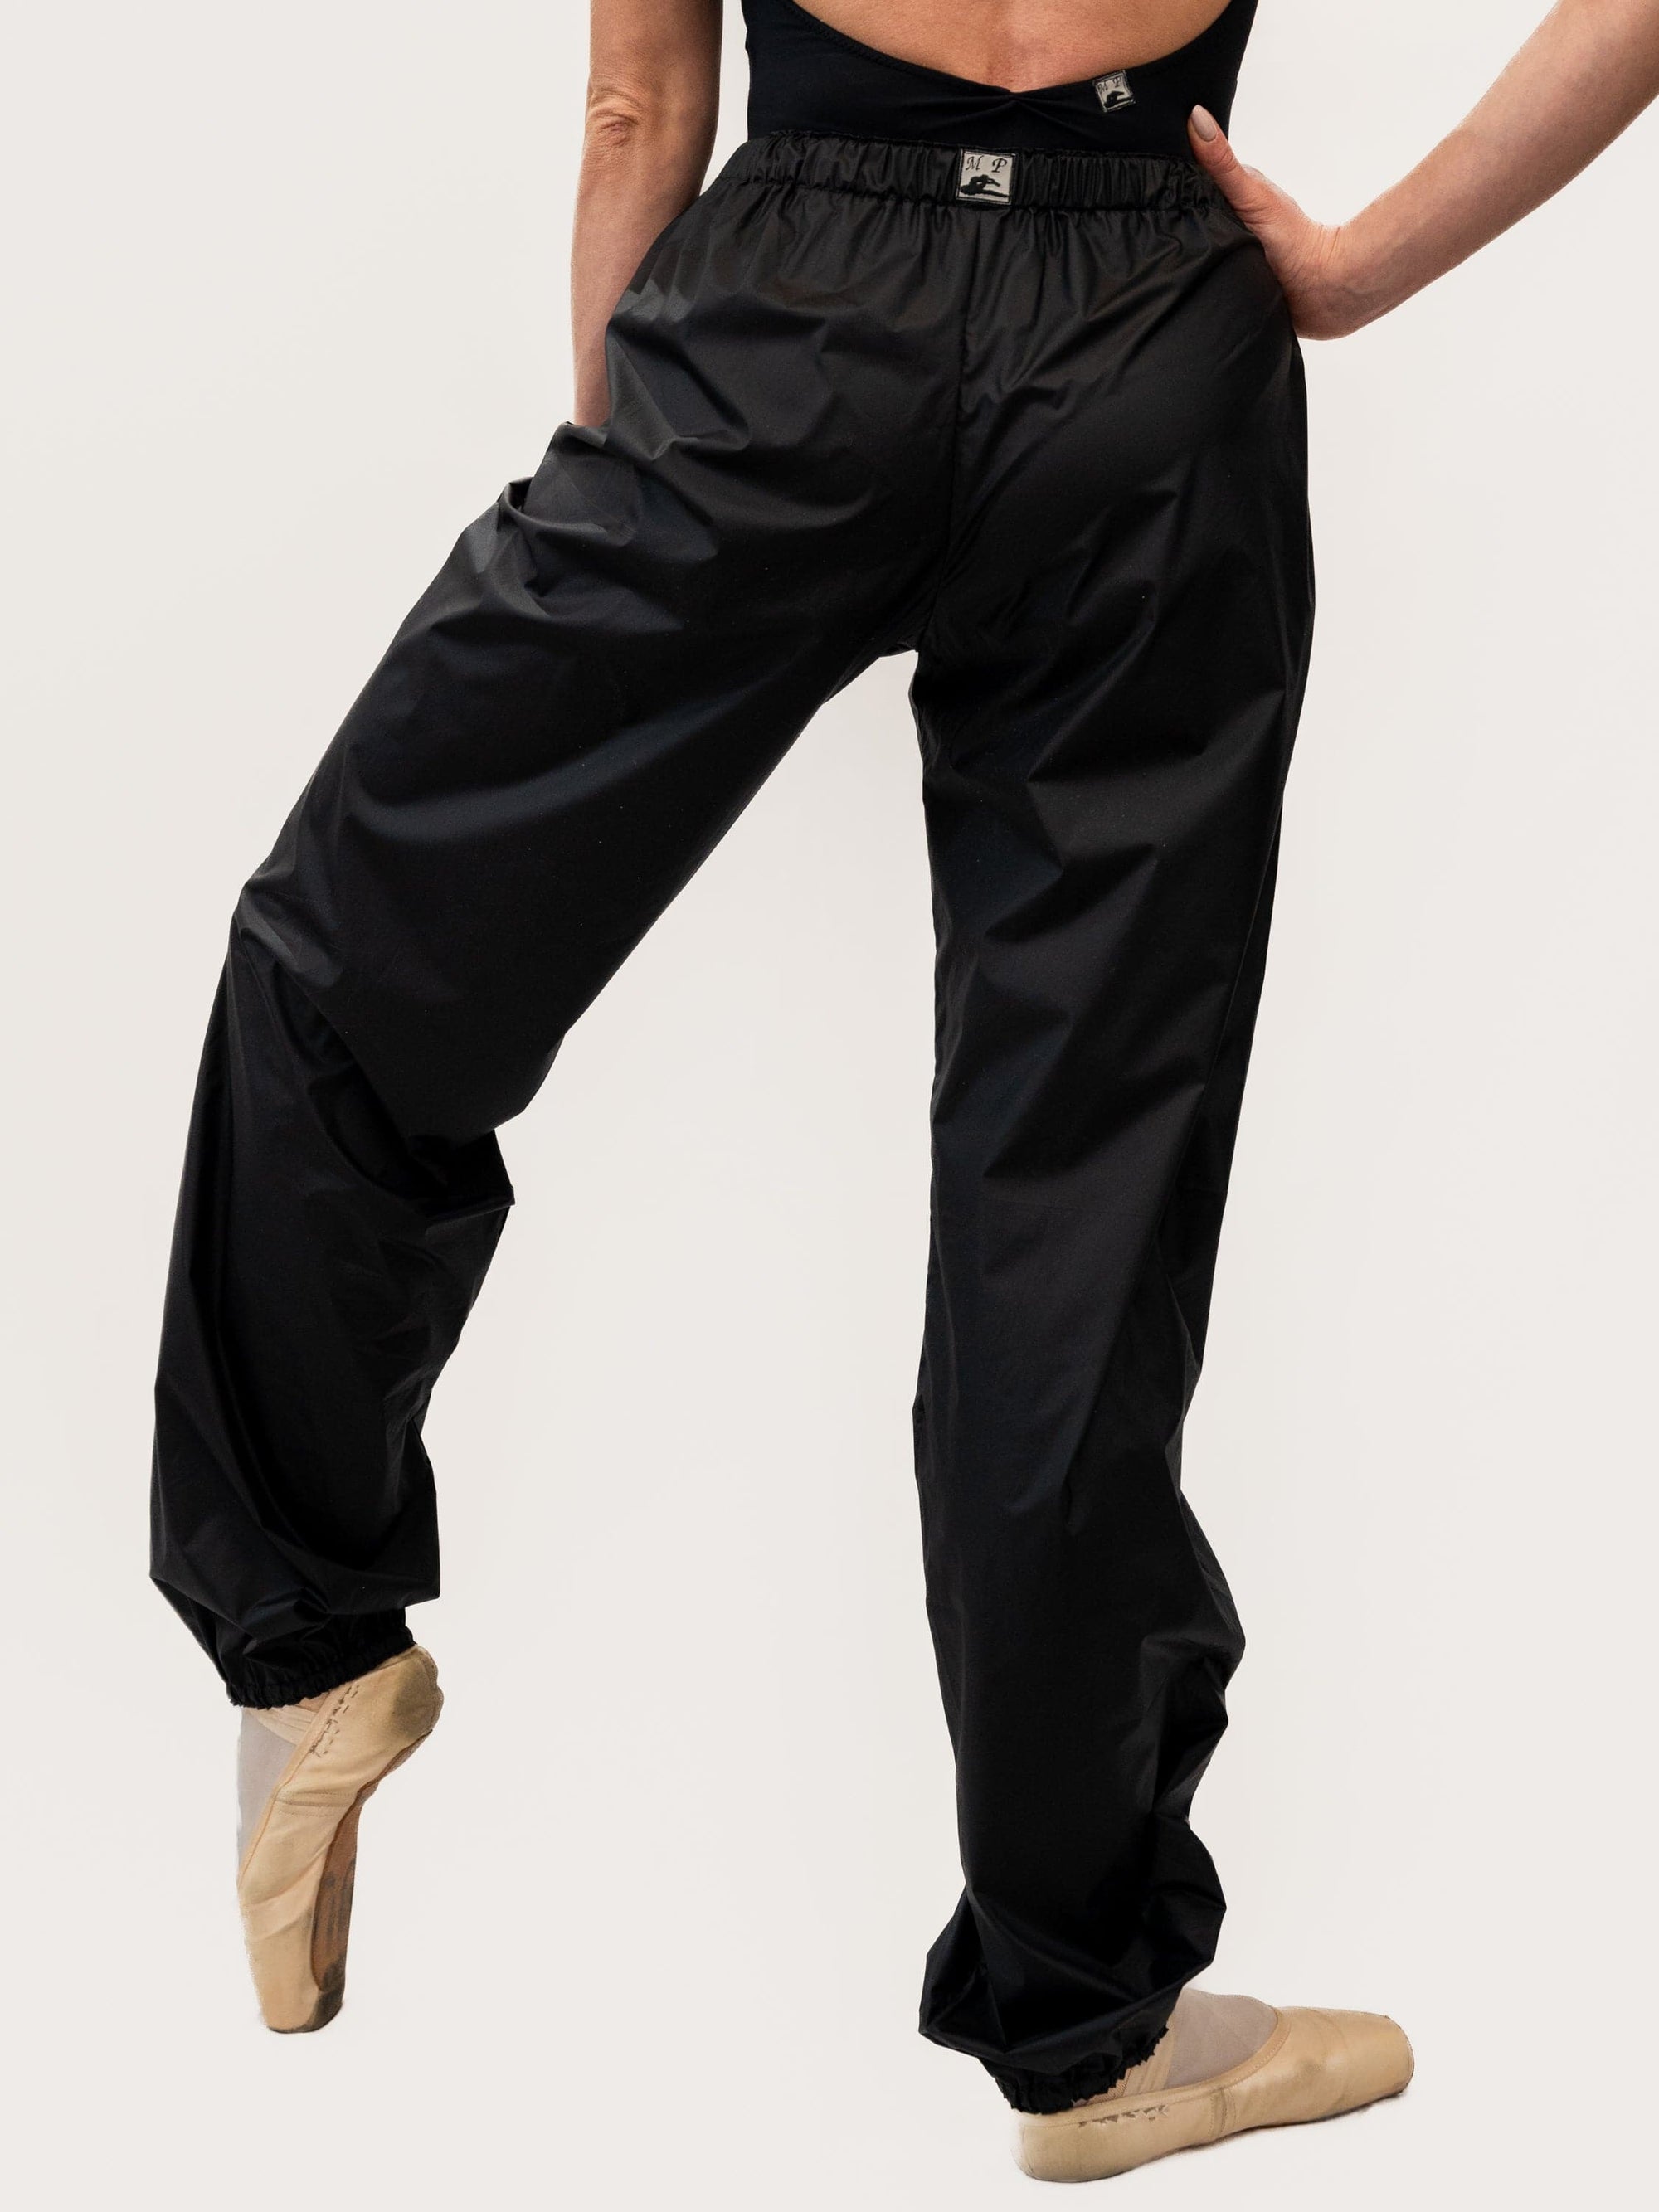 Black Warm-Up Dance Trash Bag Pants MP5003 - S / Black